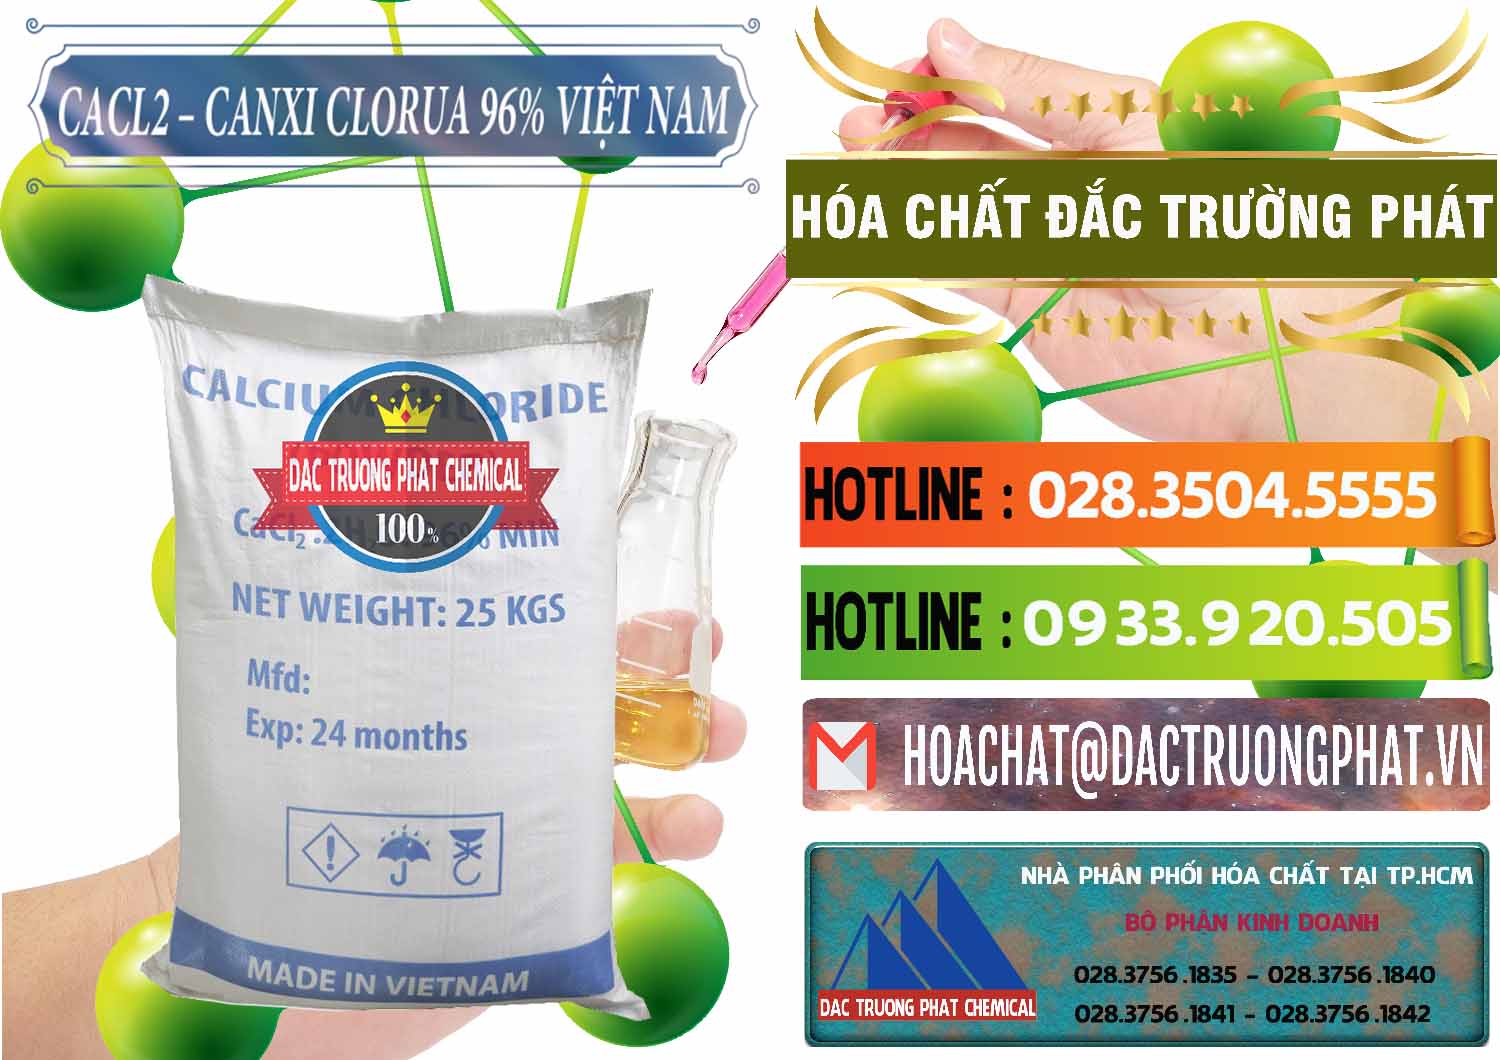 Công ty chuyên cung ứng và phân phối CaCl2 – Canxi Clorua 96% Việt Nam - 0236 - Bán ( phân phối ) hóa chất tại TP.HCM - cungcaphoachat.com.vn